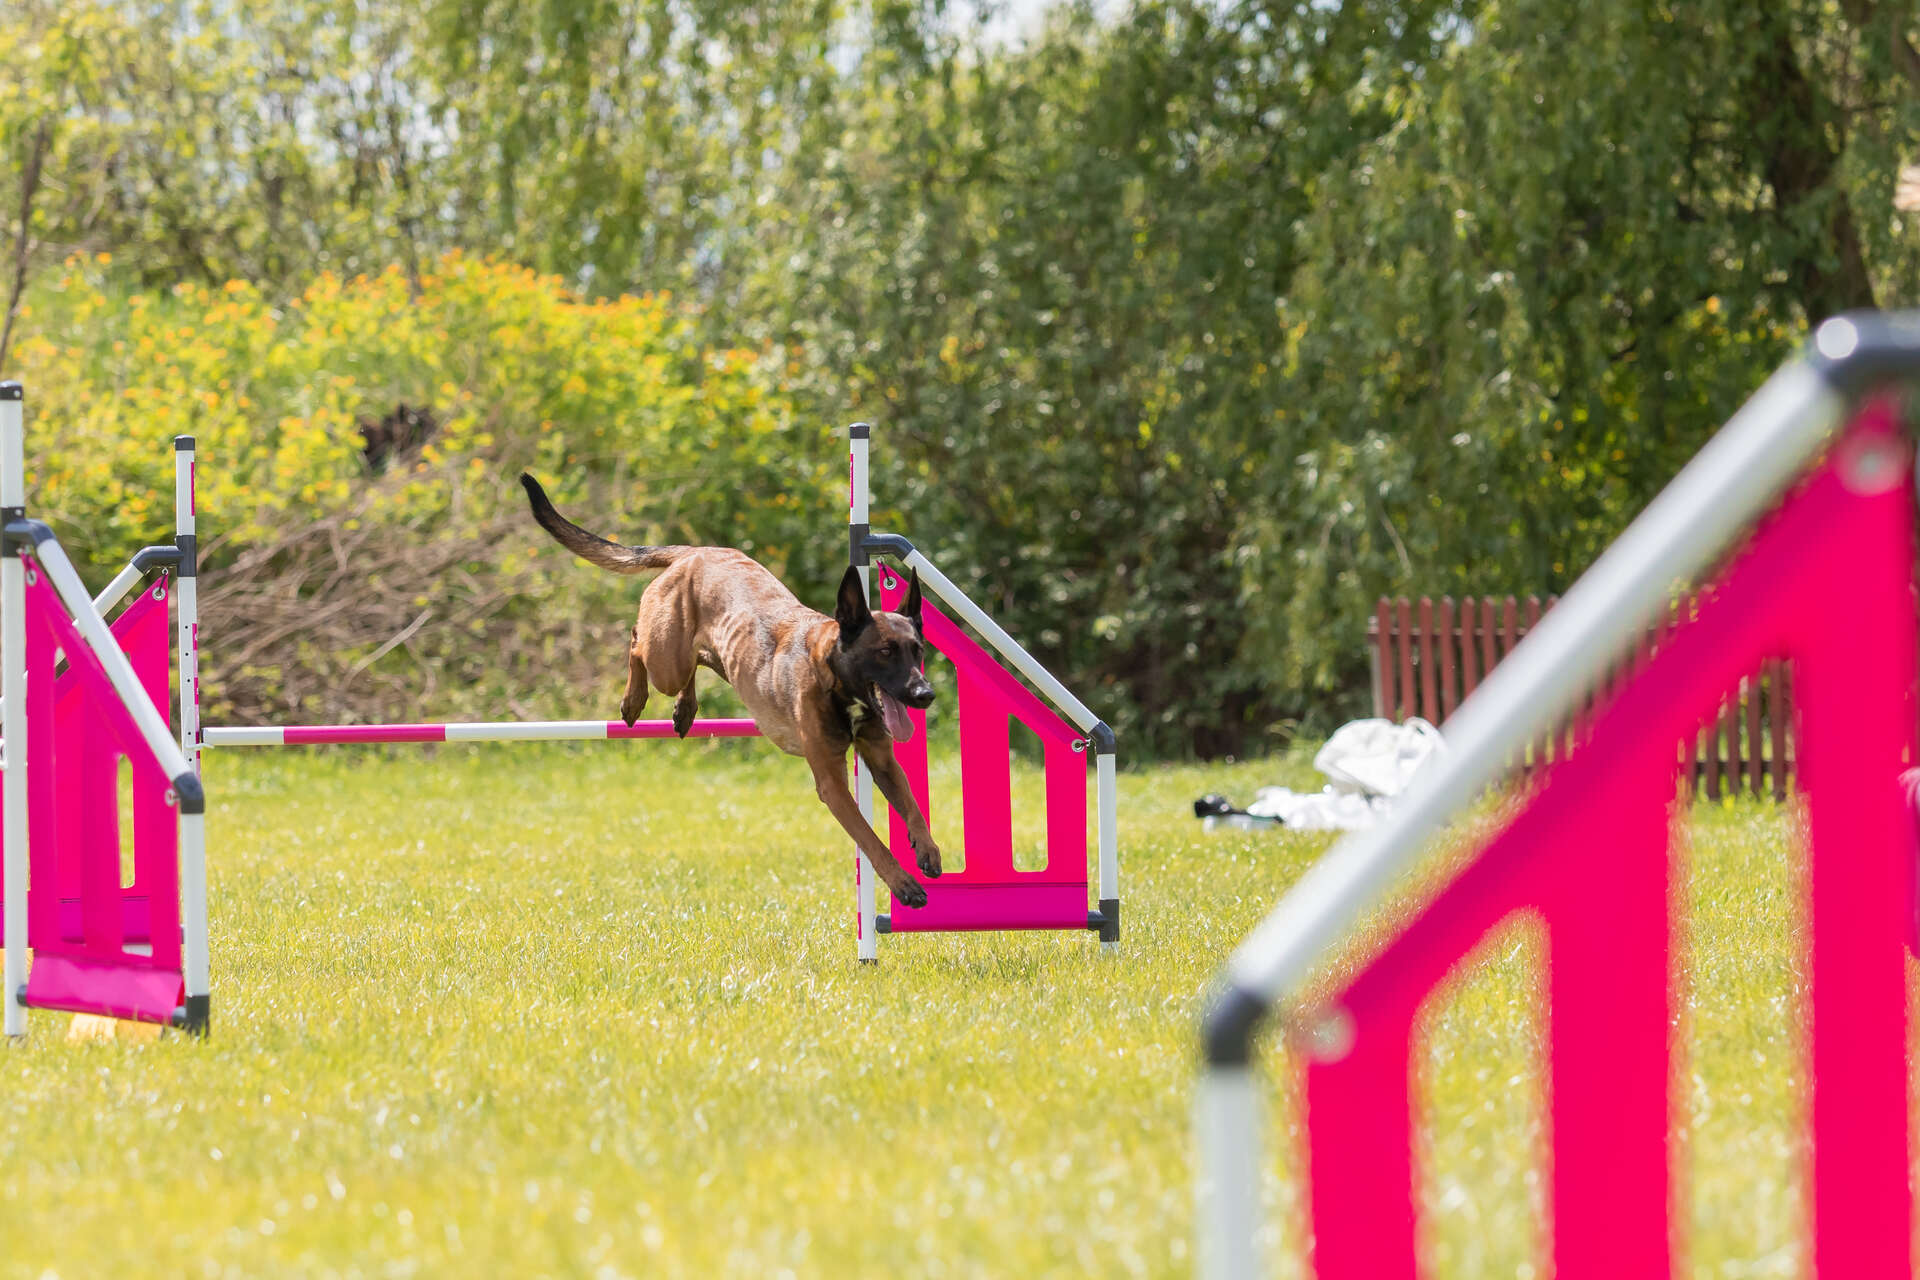 A dog jumping over an agility training bar